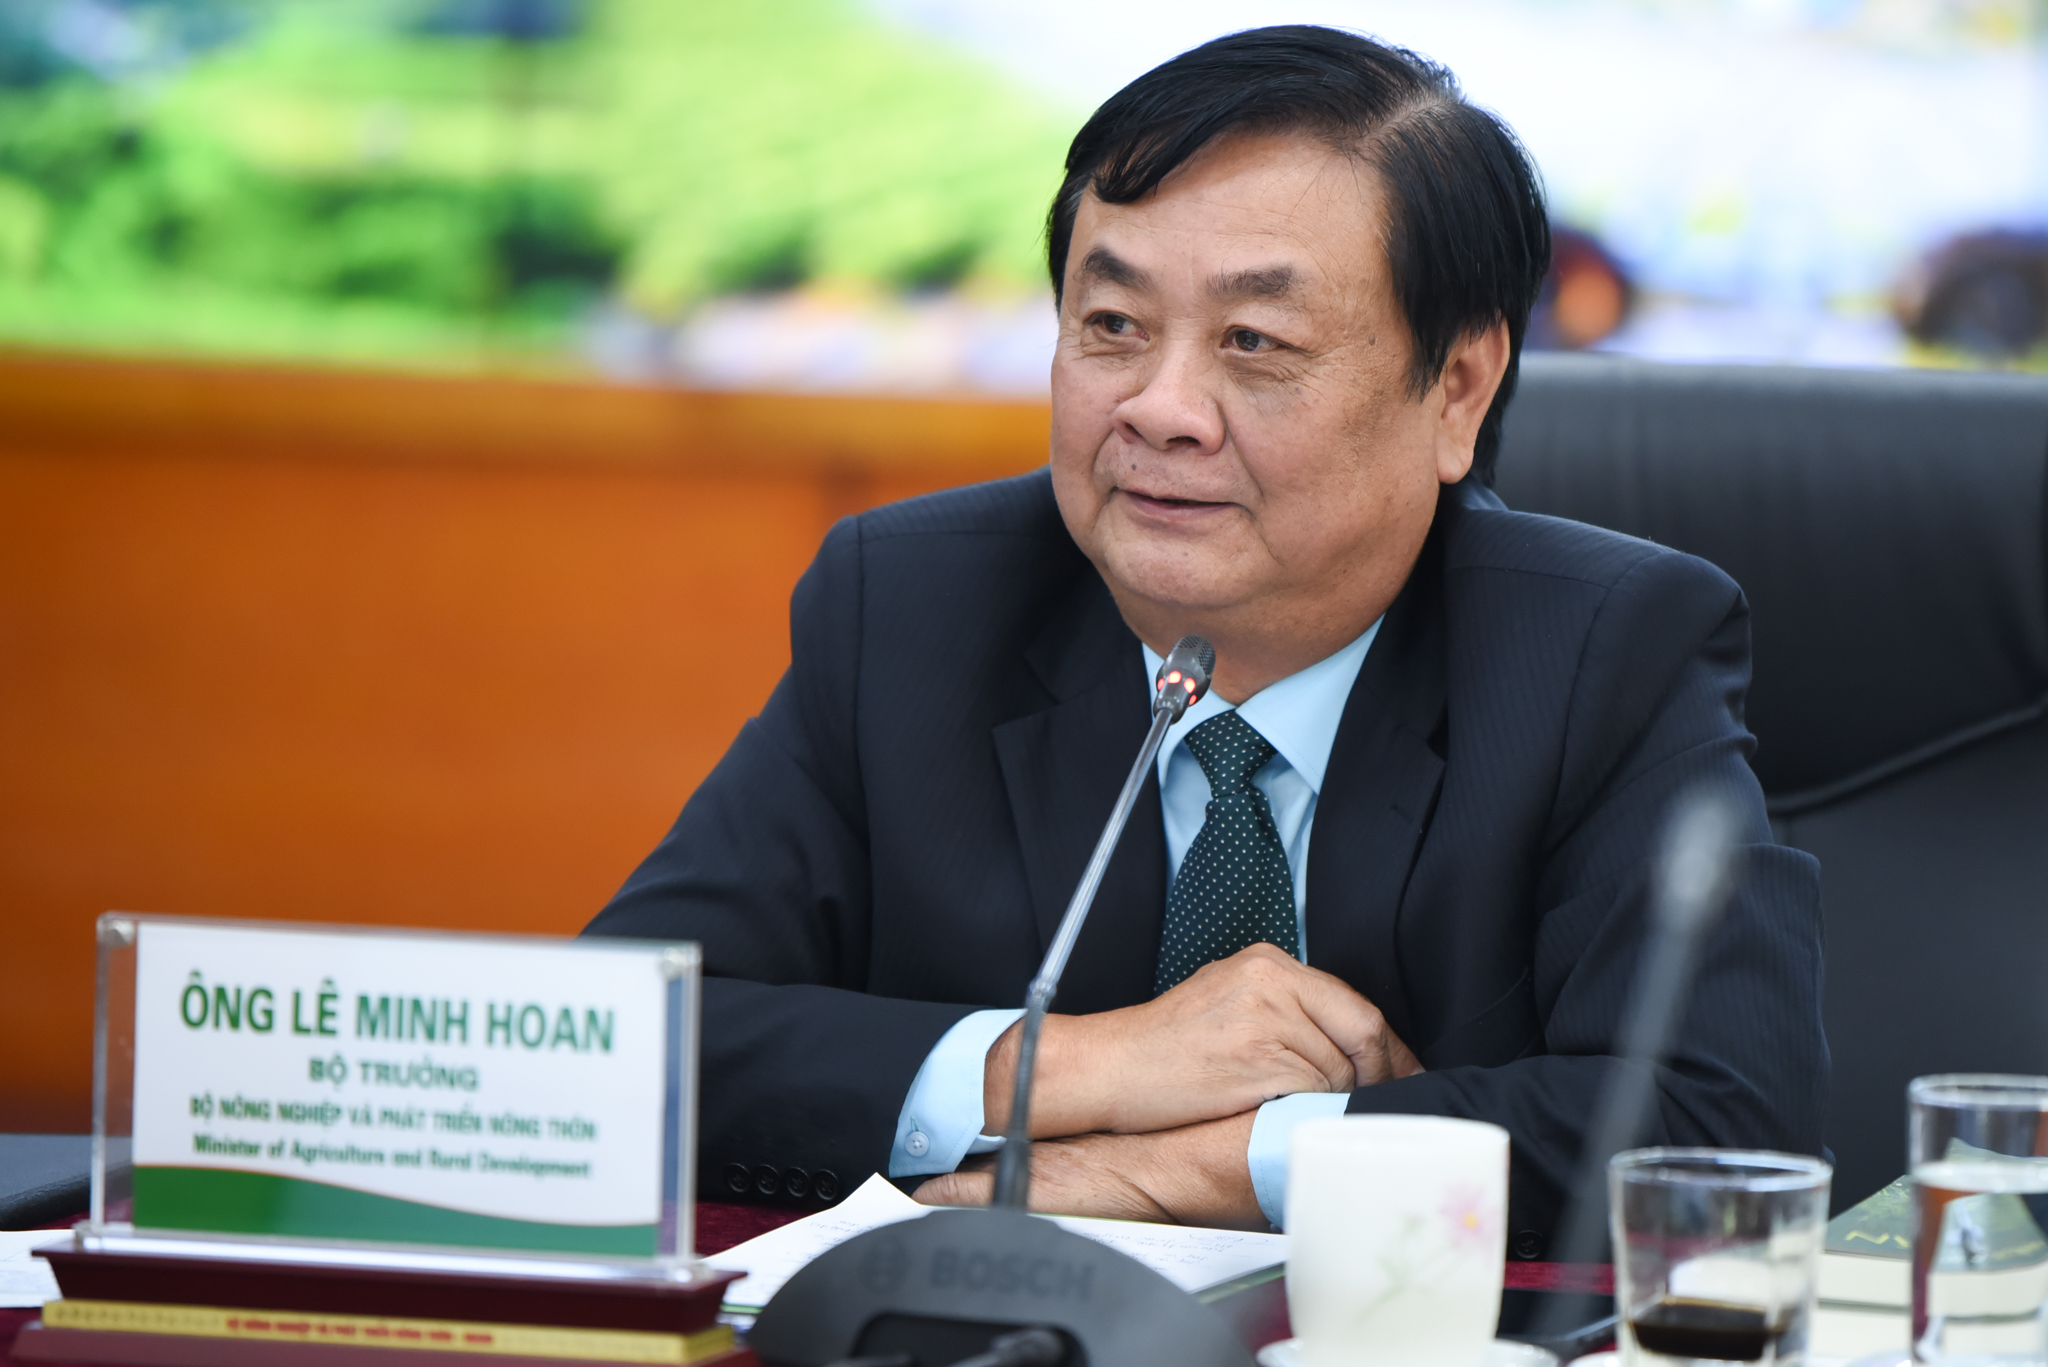 Bộ trưởng Lê Minh Hoan chia sẻ về mục tiêu tăng trưởng xanh của ngành nông nghiệp. Ảnh: Tùng Đinh.